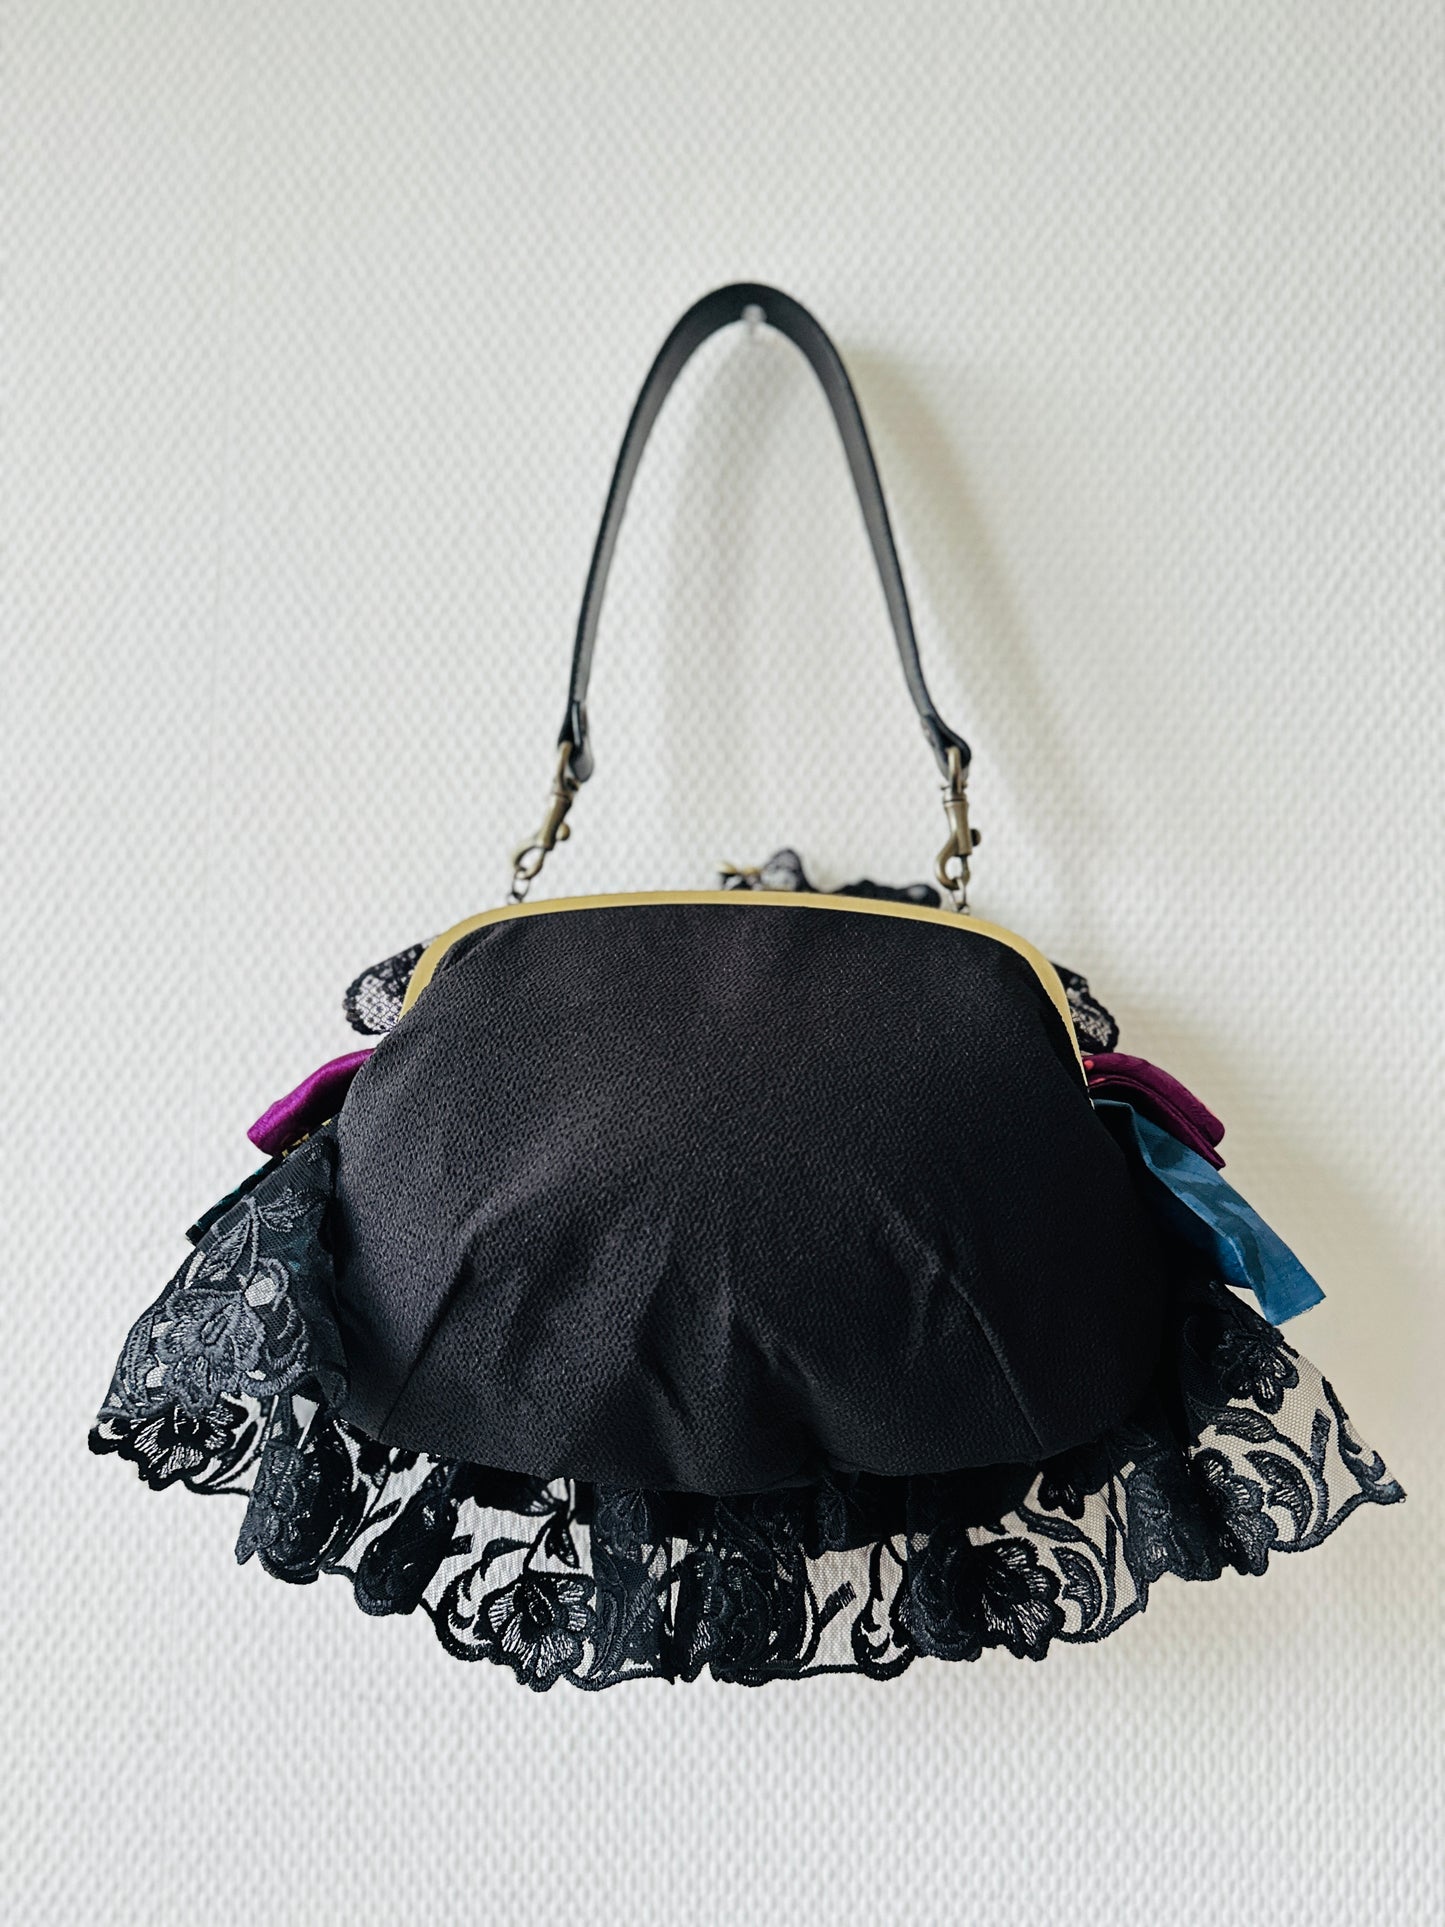 【Gogatsudo】 3way-handbag / noir, Meisen antique, fioritures, embrayage, pochette, sac japonais, sac à bandoulière, cadeaux japonais